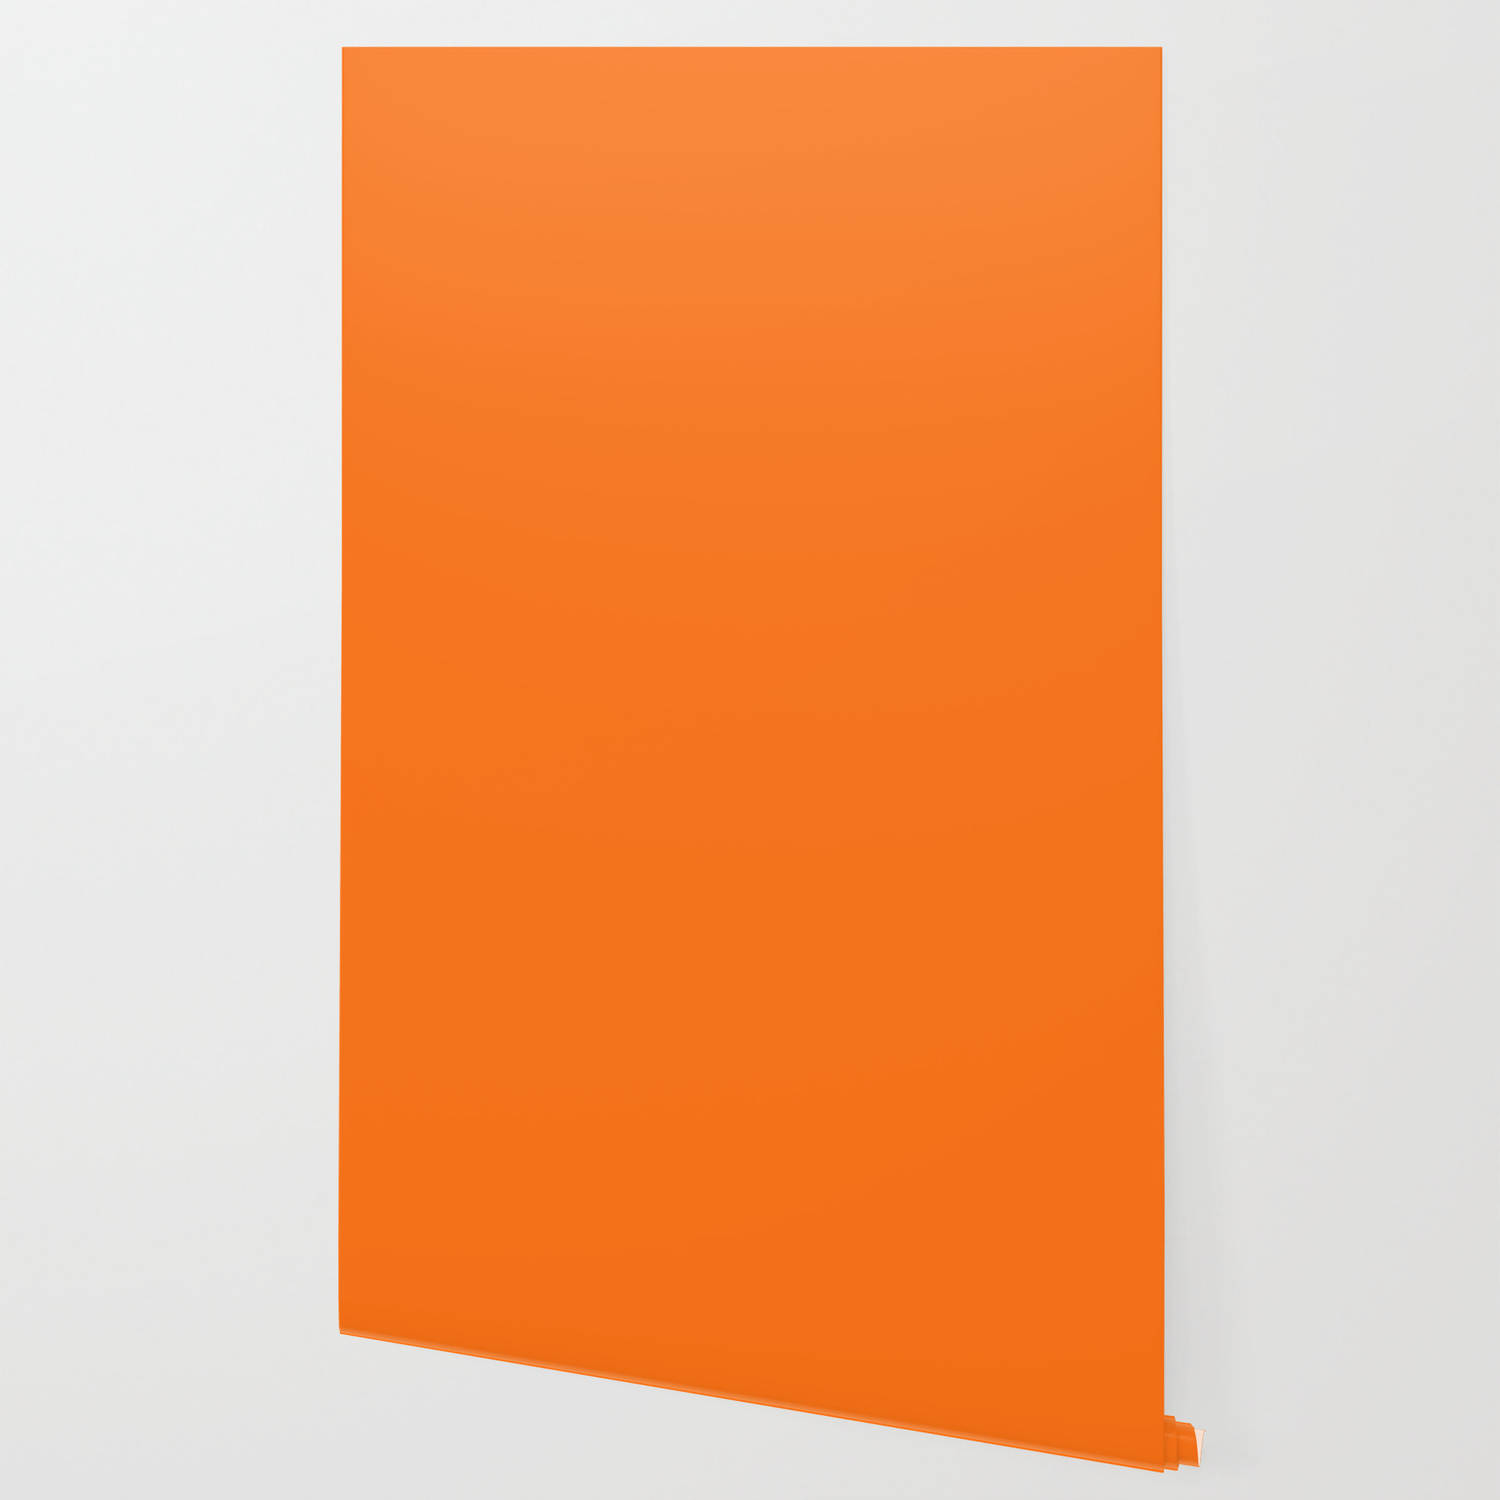 En lys og kraftig solide orange farve Wallpaper